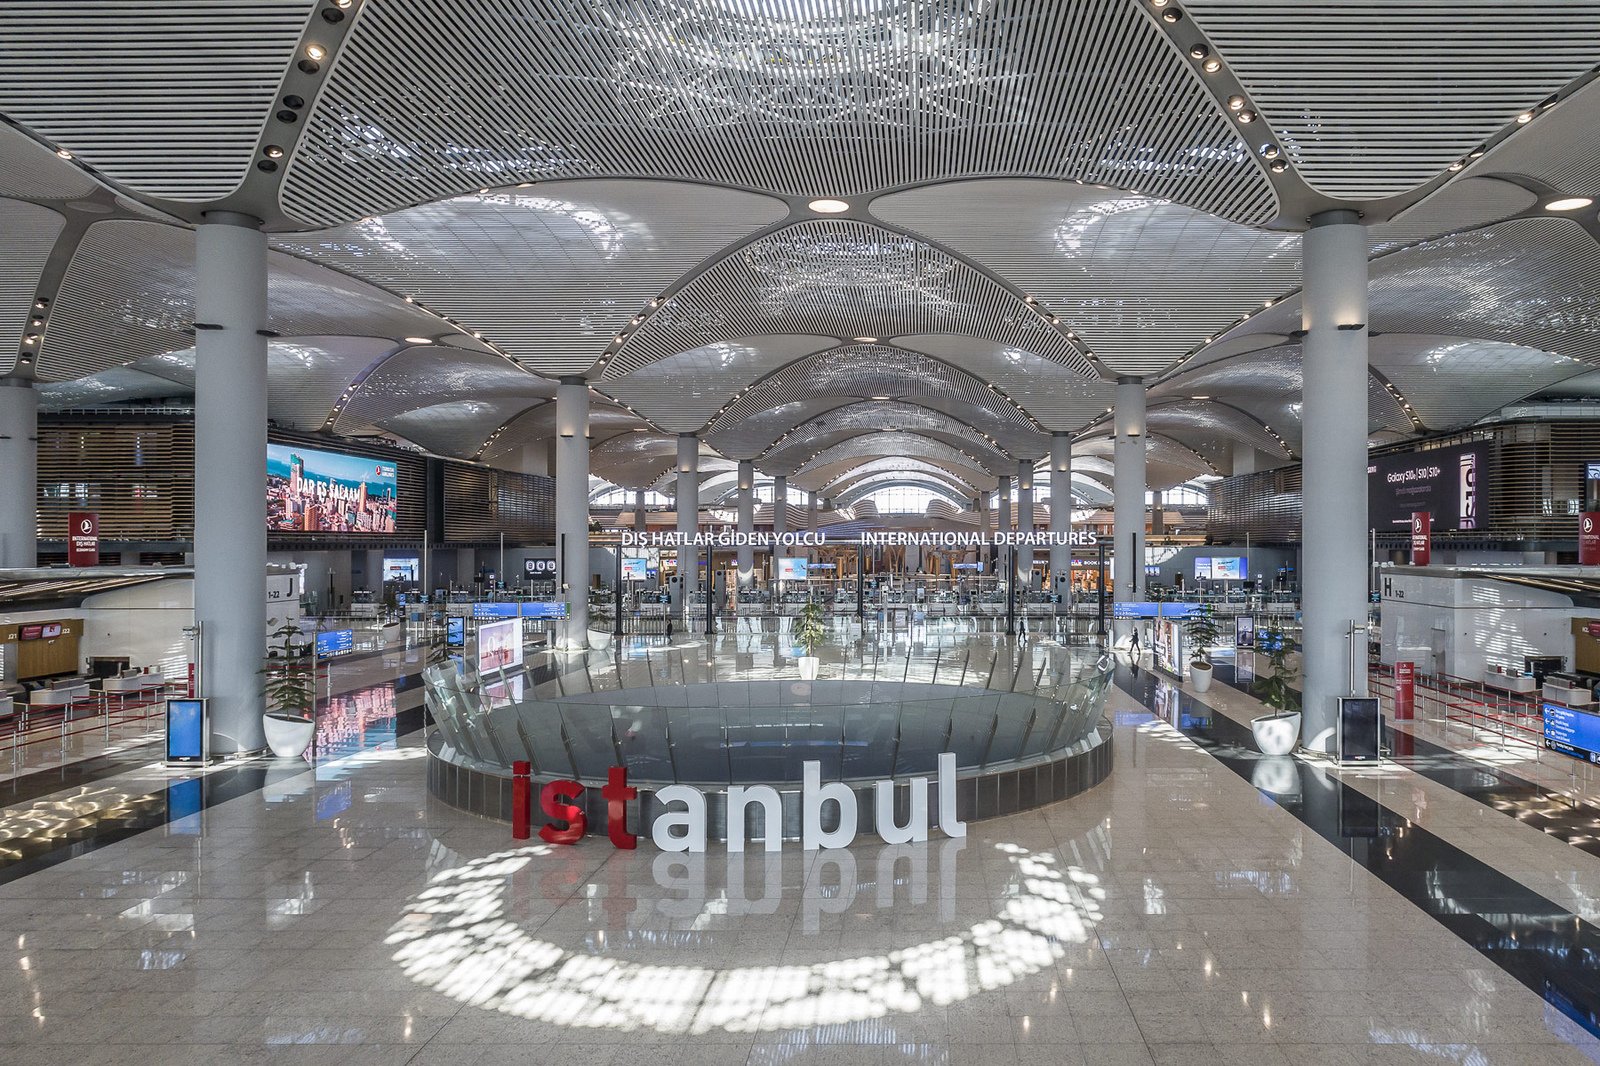 イスタンブール空港